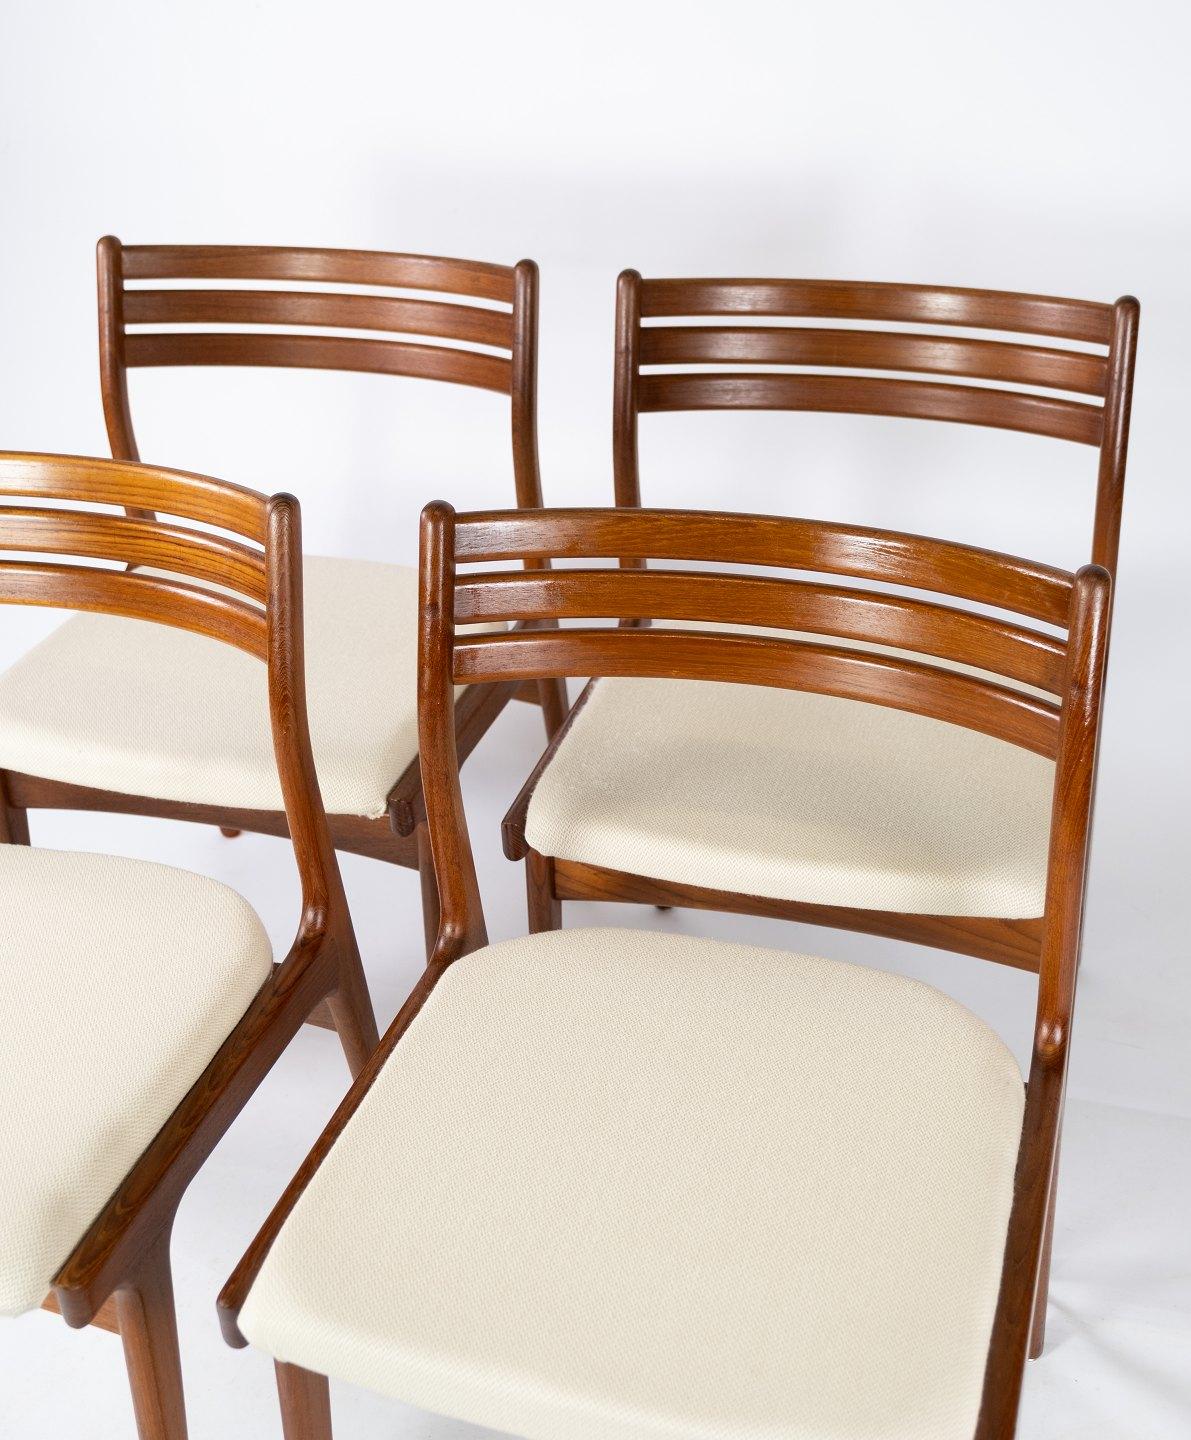 
Dieses Set aus vier Esszimmerstühlen ist der Inbegriff der skandinavischen Designästhetik der 1960er Jahre. Die aus Teakholz gefertigten Stühle haben einen warmen und einladenden Farbton, der für die naturalistische Herangehensweise der Epoche an